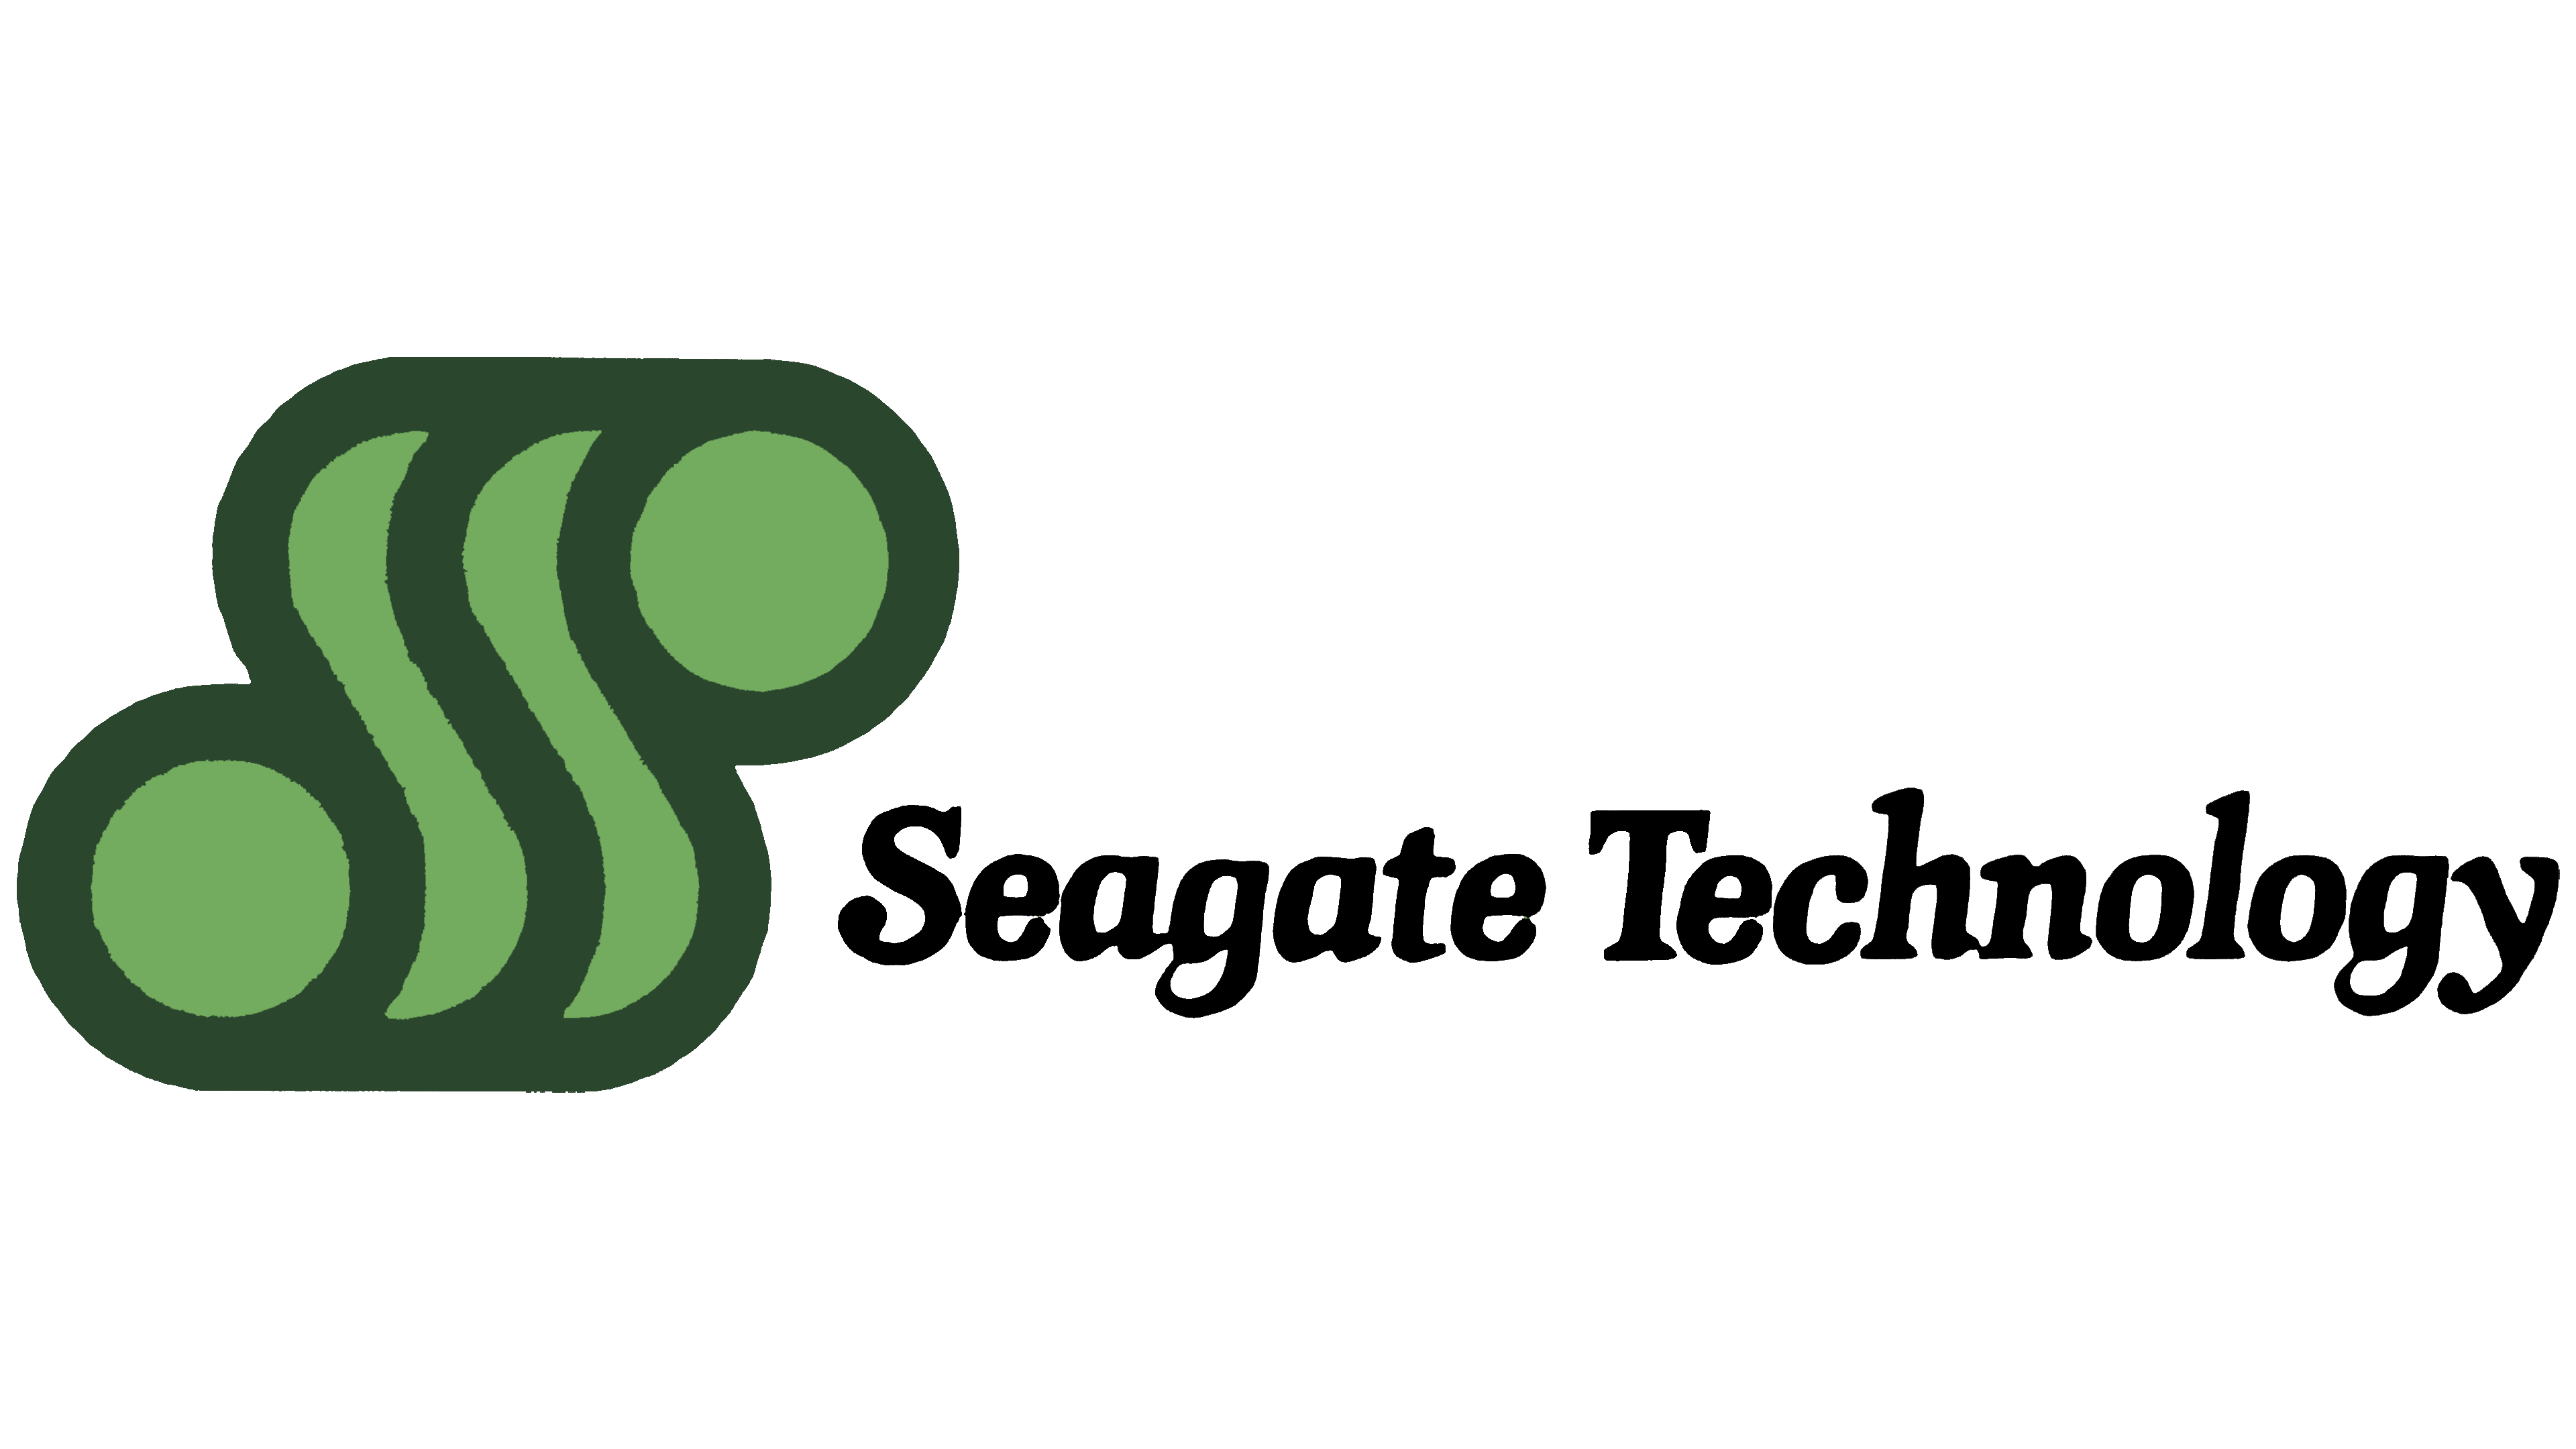 Seagate Guardian... - Prowatcher Security Systems - Cebu | Facebook